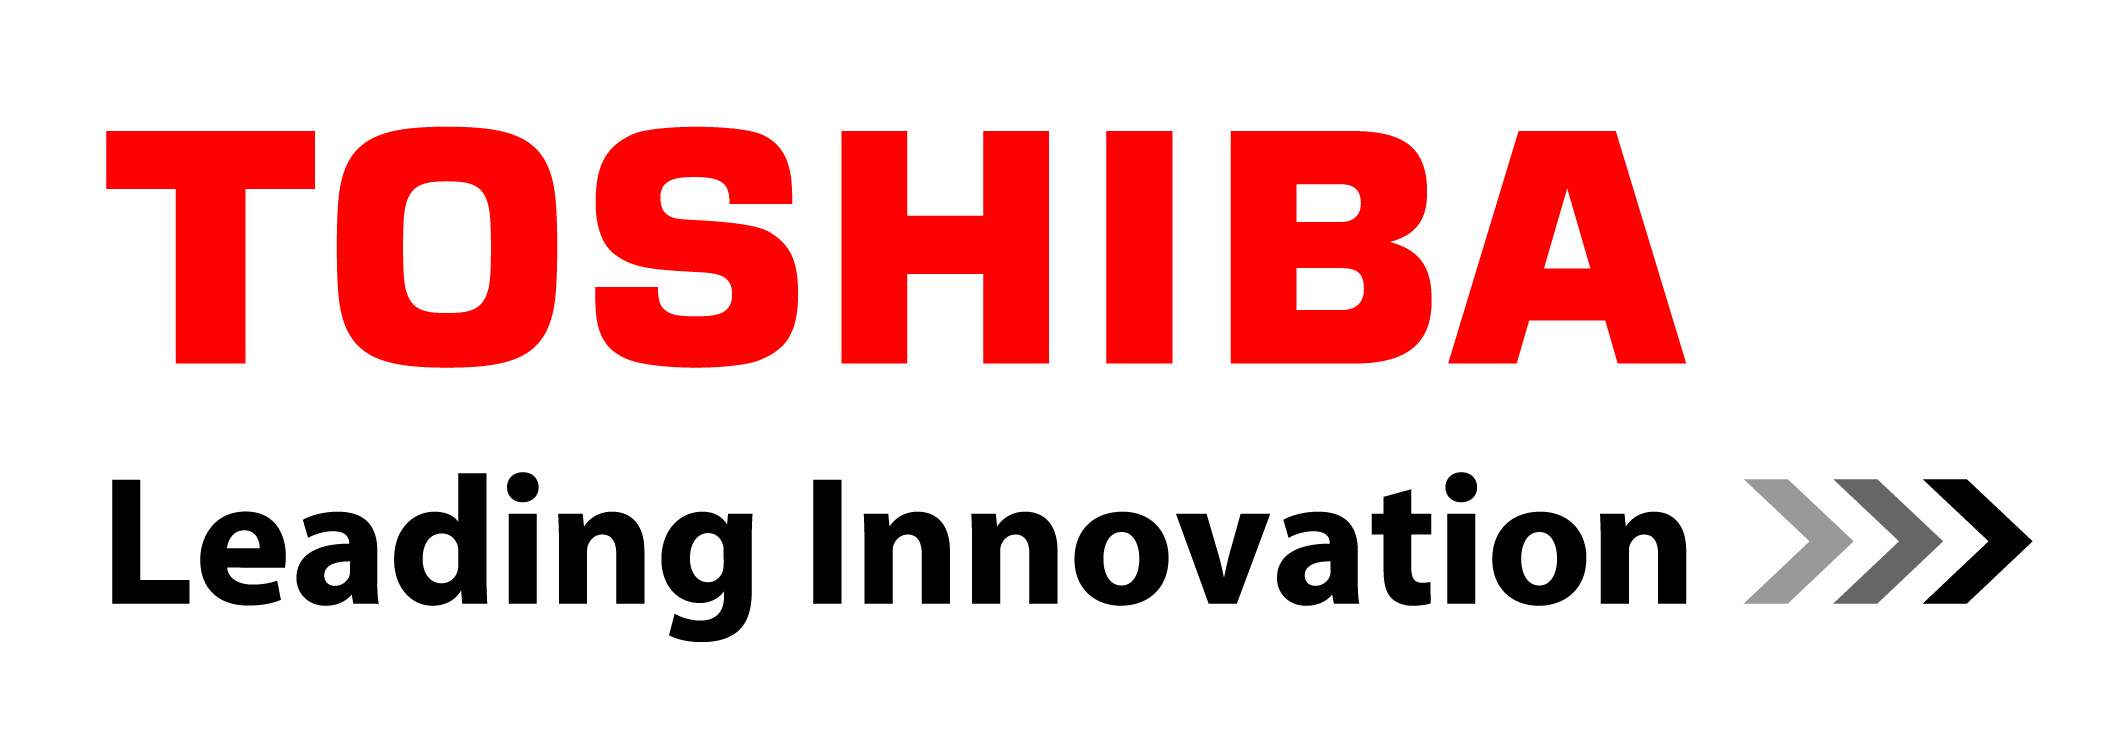 Nuovo accordo di distribuzione con Toshiba